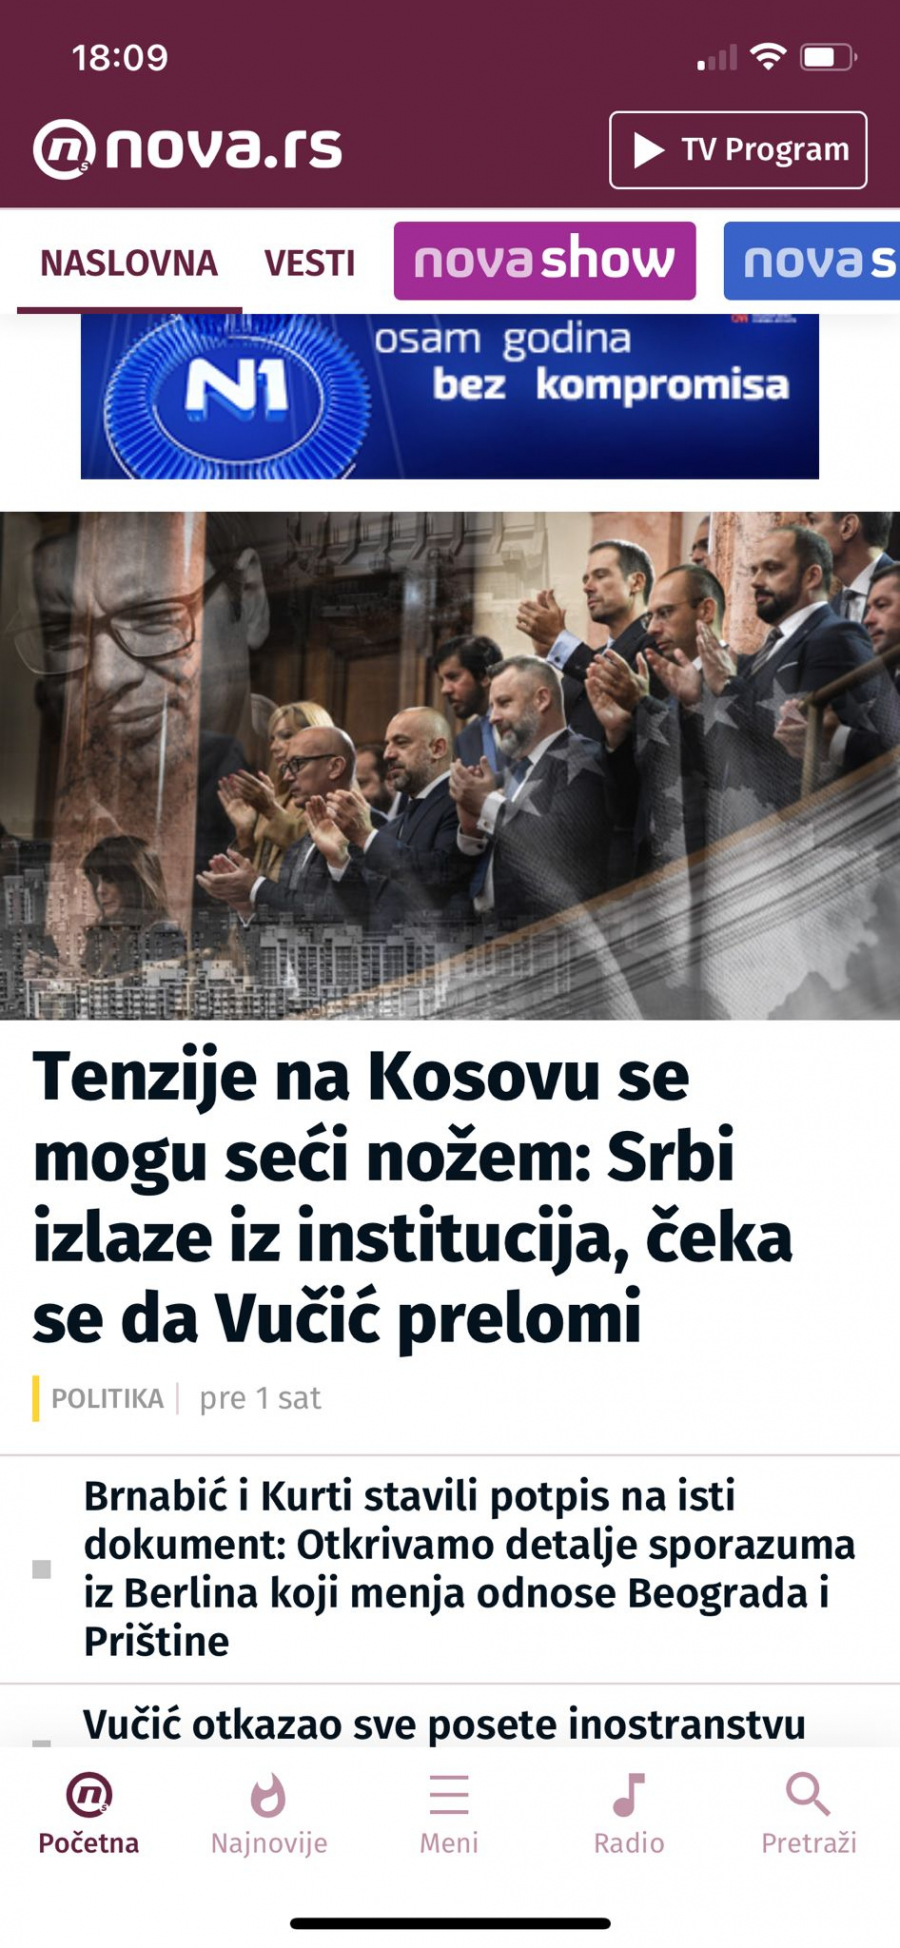 NOVI AUTOGOL TAJKUNSKIH MEDIJA Vučić sve unapred video, a oni, lažovi i amateri, demantuju sami sebe! (FOTO)